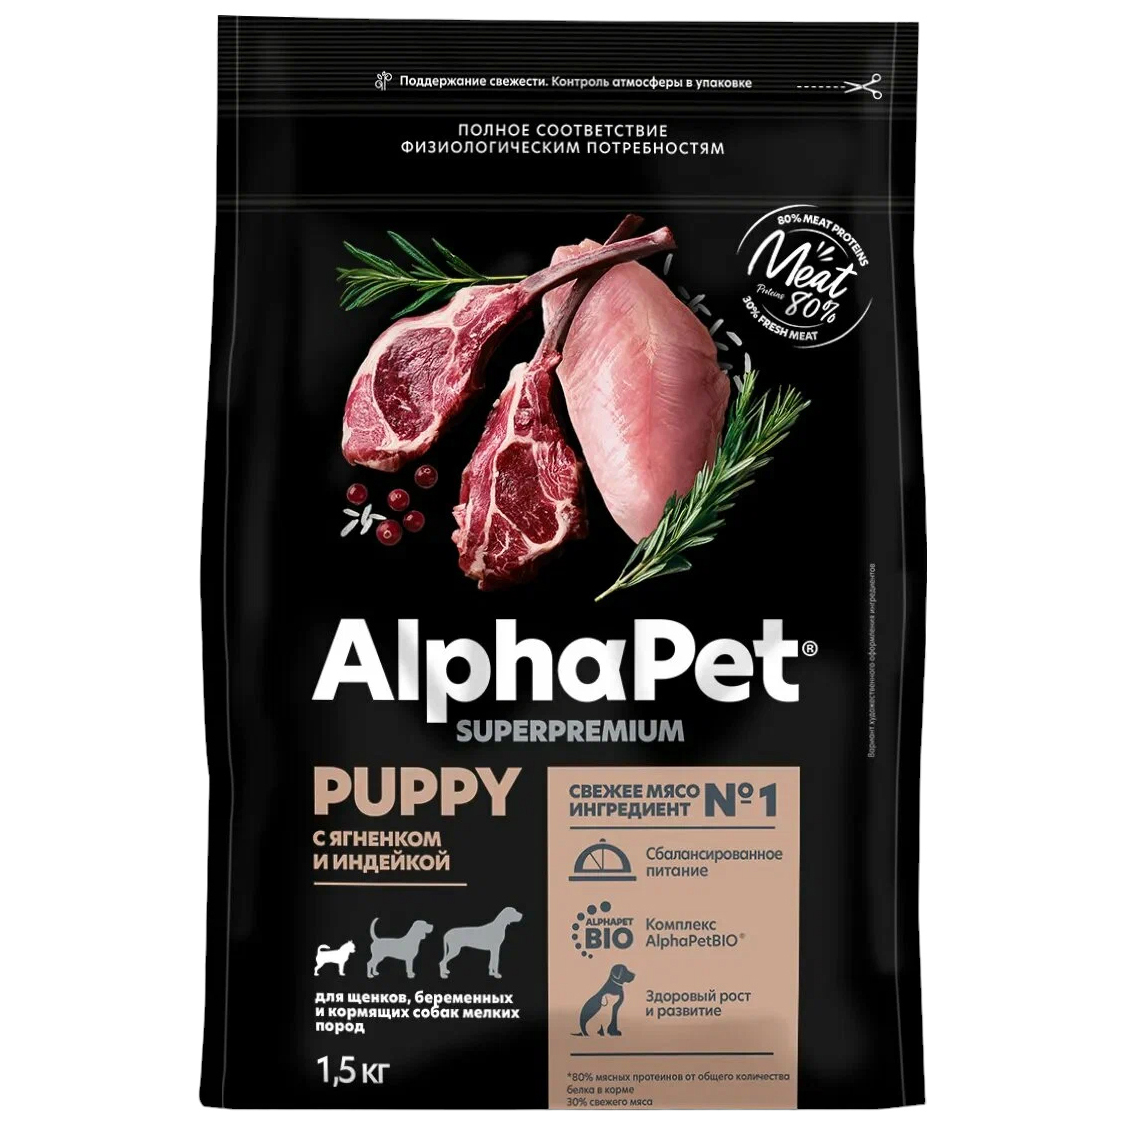 Купить сухой корм для щенков AlphaPet Superpremium с ягненком и индейкой для мелких пород, 1,5 кг, цены на Мегамаркет | Артикул: 600007560044